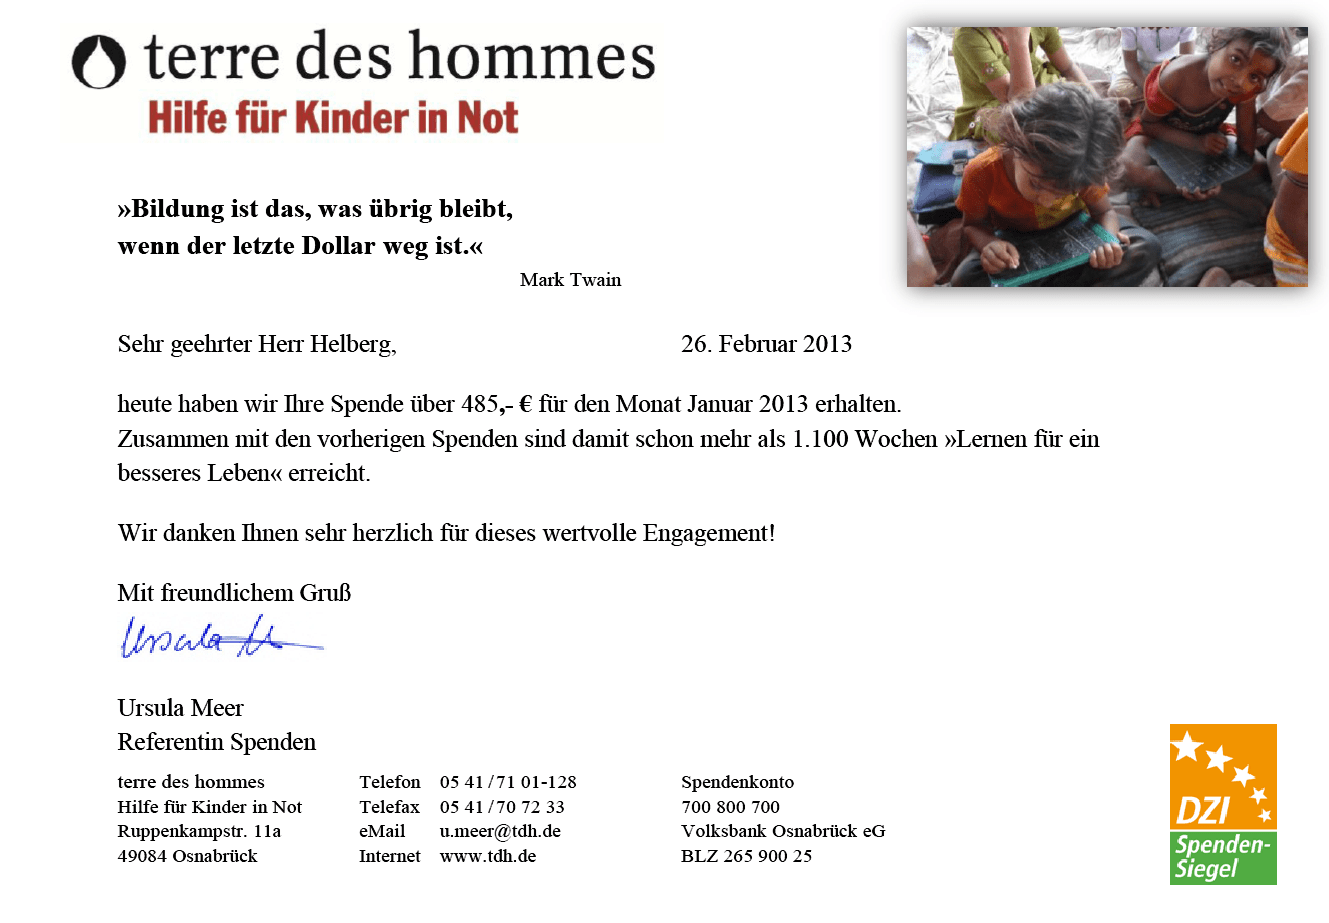 Spendenbestätigung von terre des hommes, Lernen für ein besseres Leben. Versicherungen mit Nebenwirkungen.